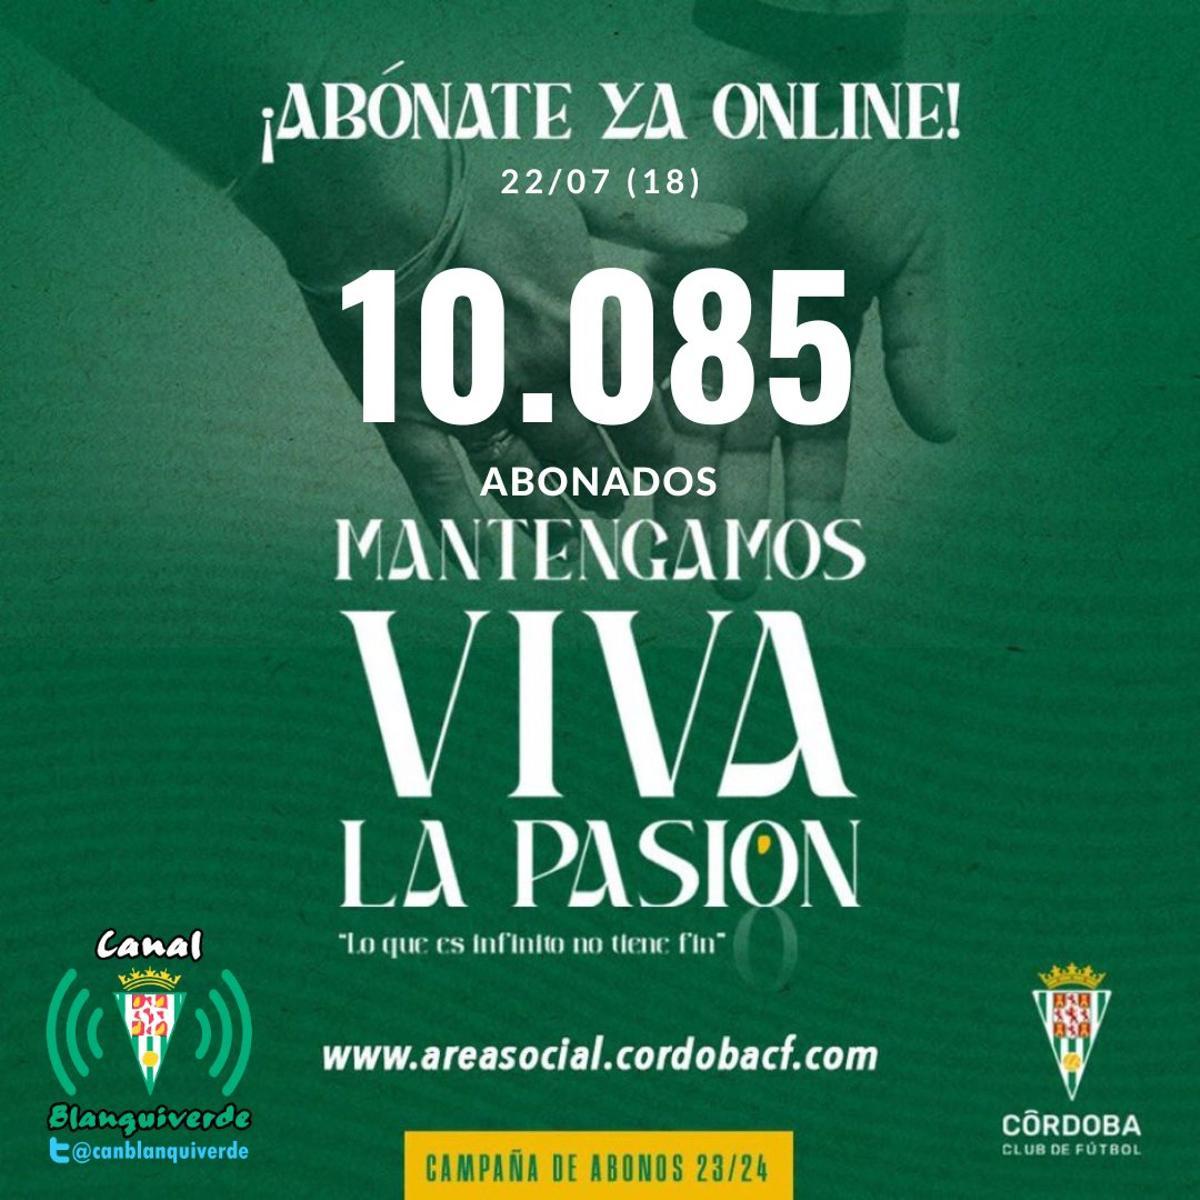 El Córdoba CF ya tiene 10.085 abonados.